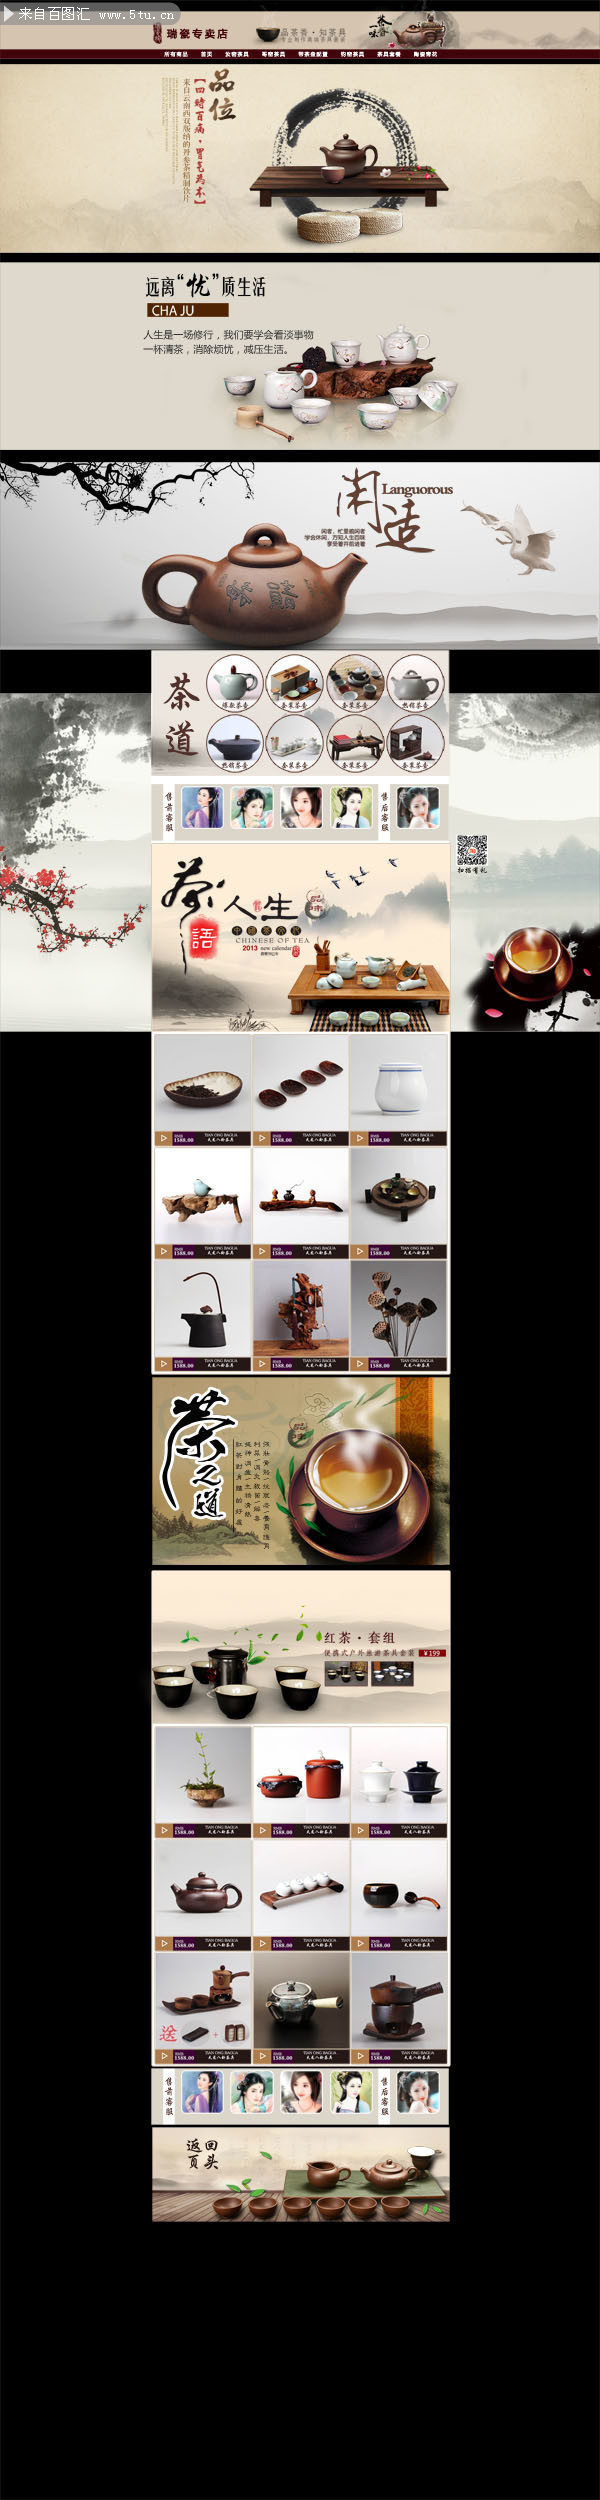 中国风淘宝茶叶店装修设计图片素材